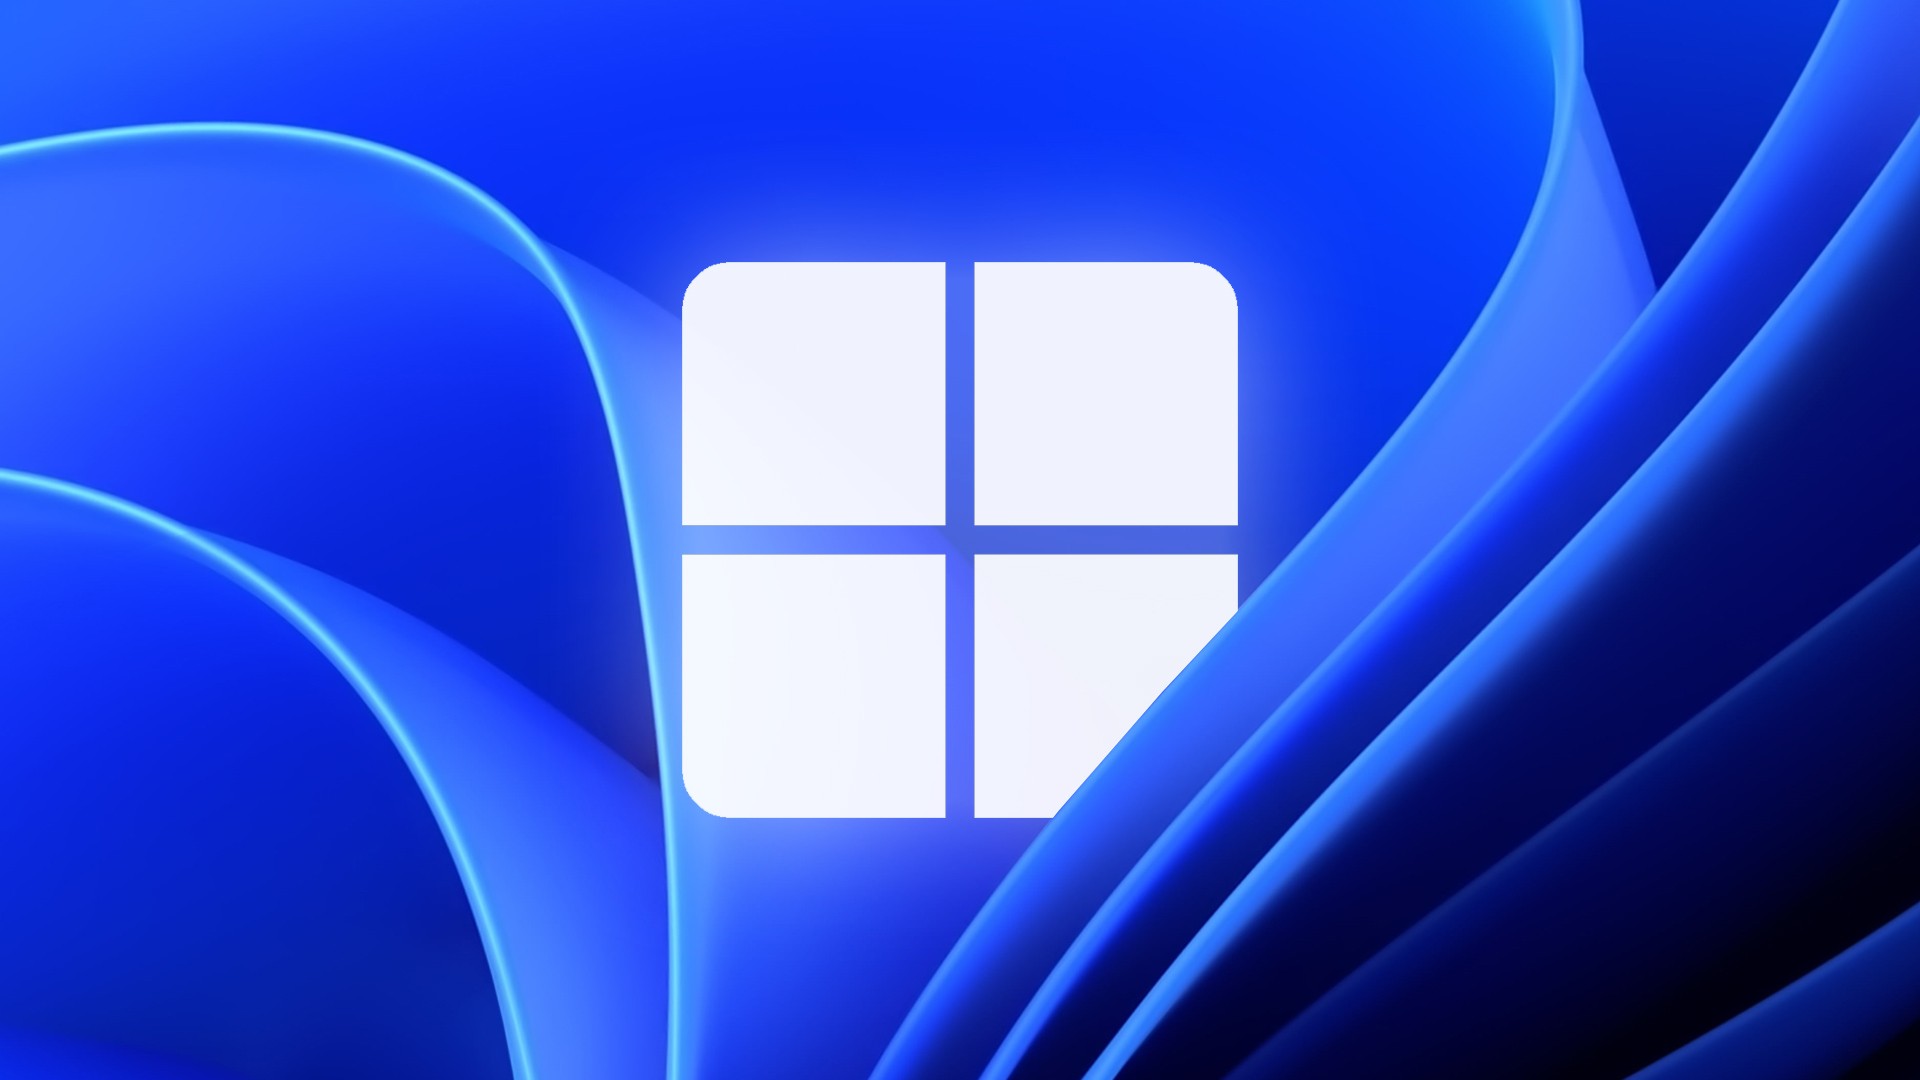 Desempenho de Jogos em PC Pode Diminuir com Windows 11 22H2